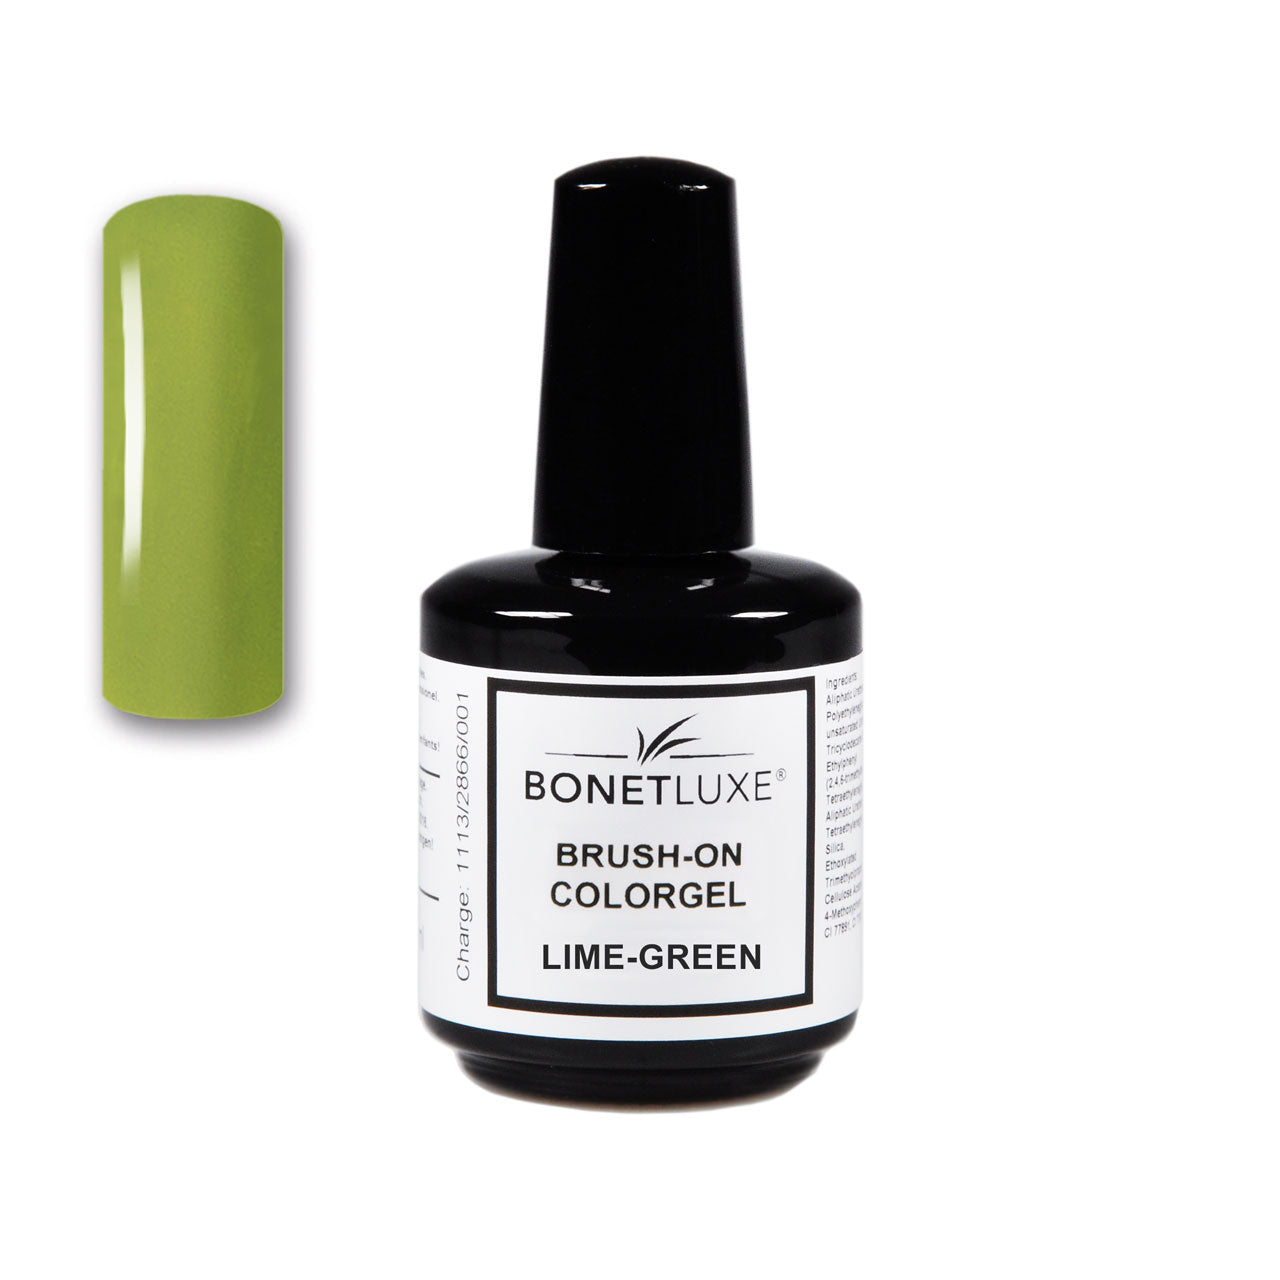 Bonetluxe Brush-On Colorgel Lime-Green